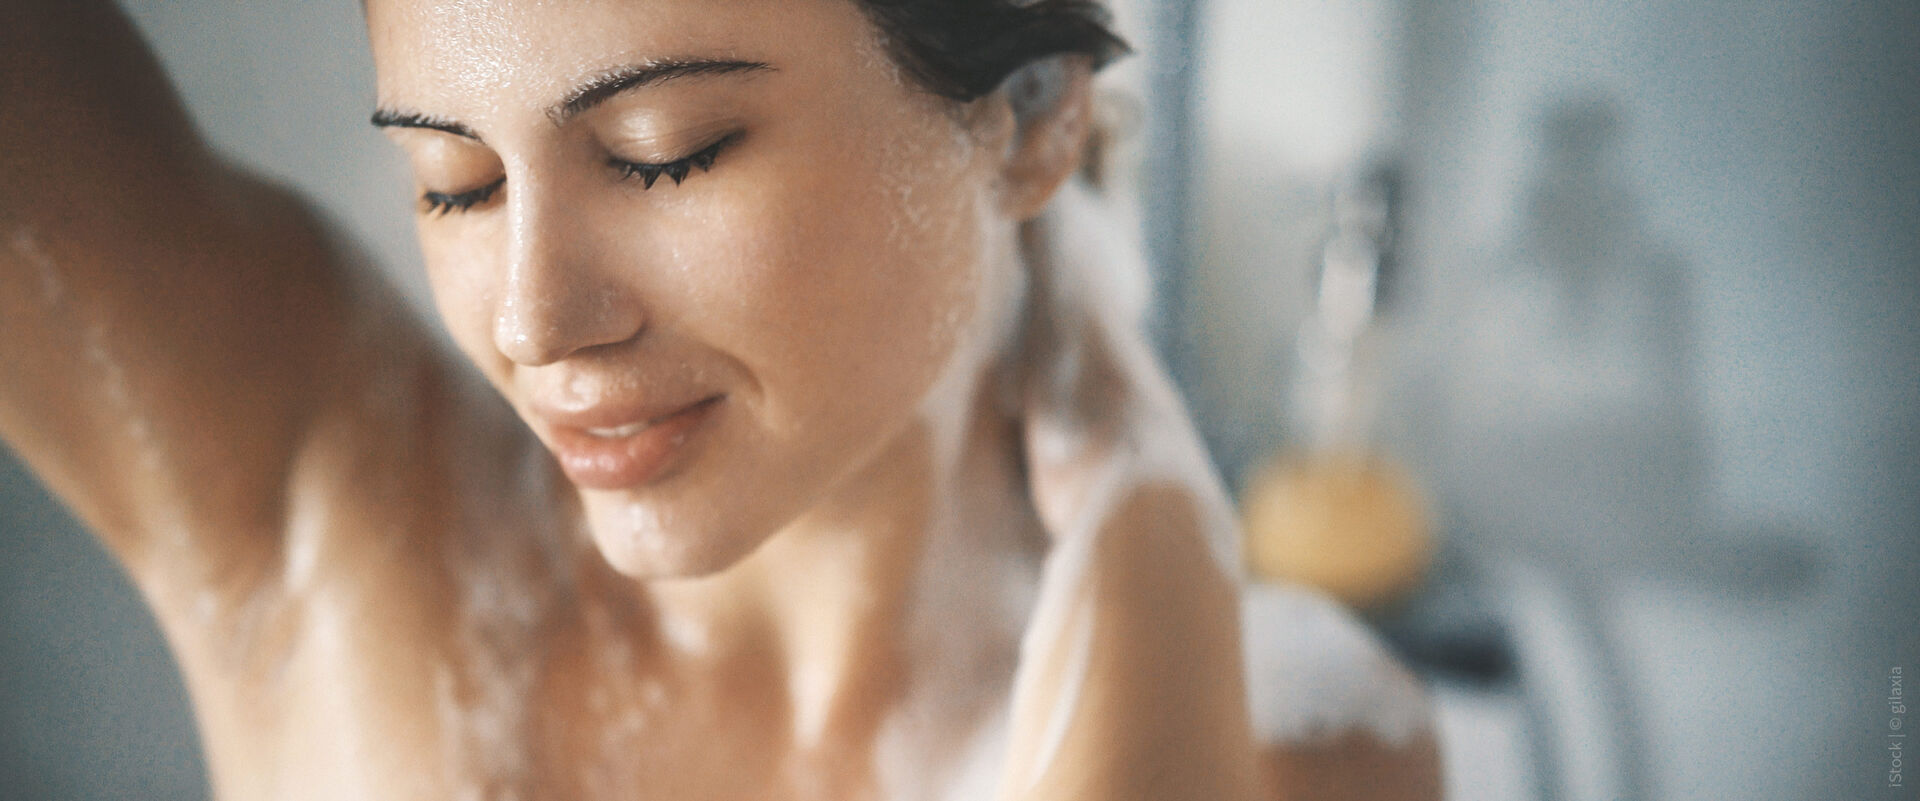 Syr Modelbild einer Frau unter der Dusche mit nassem Gesicht und Wasser.